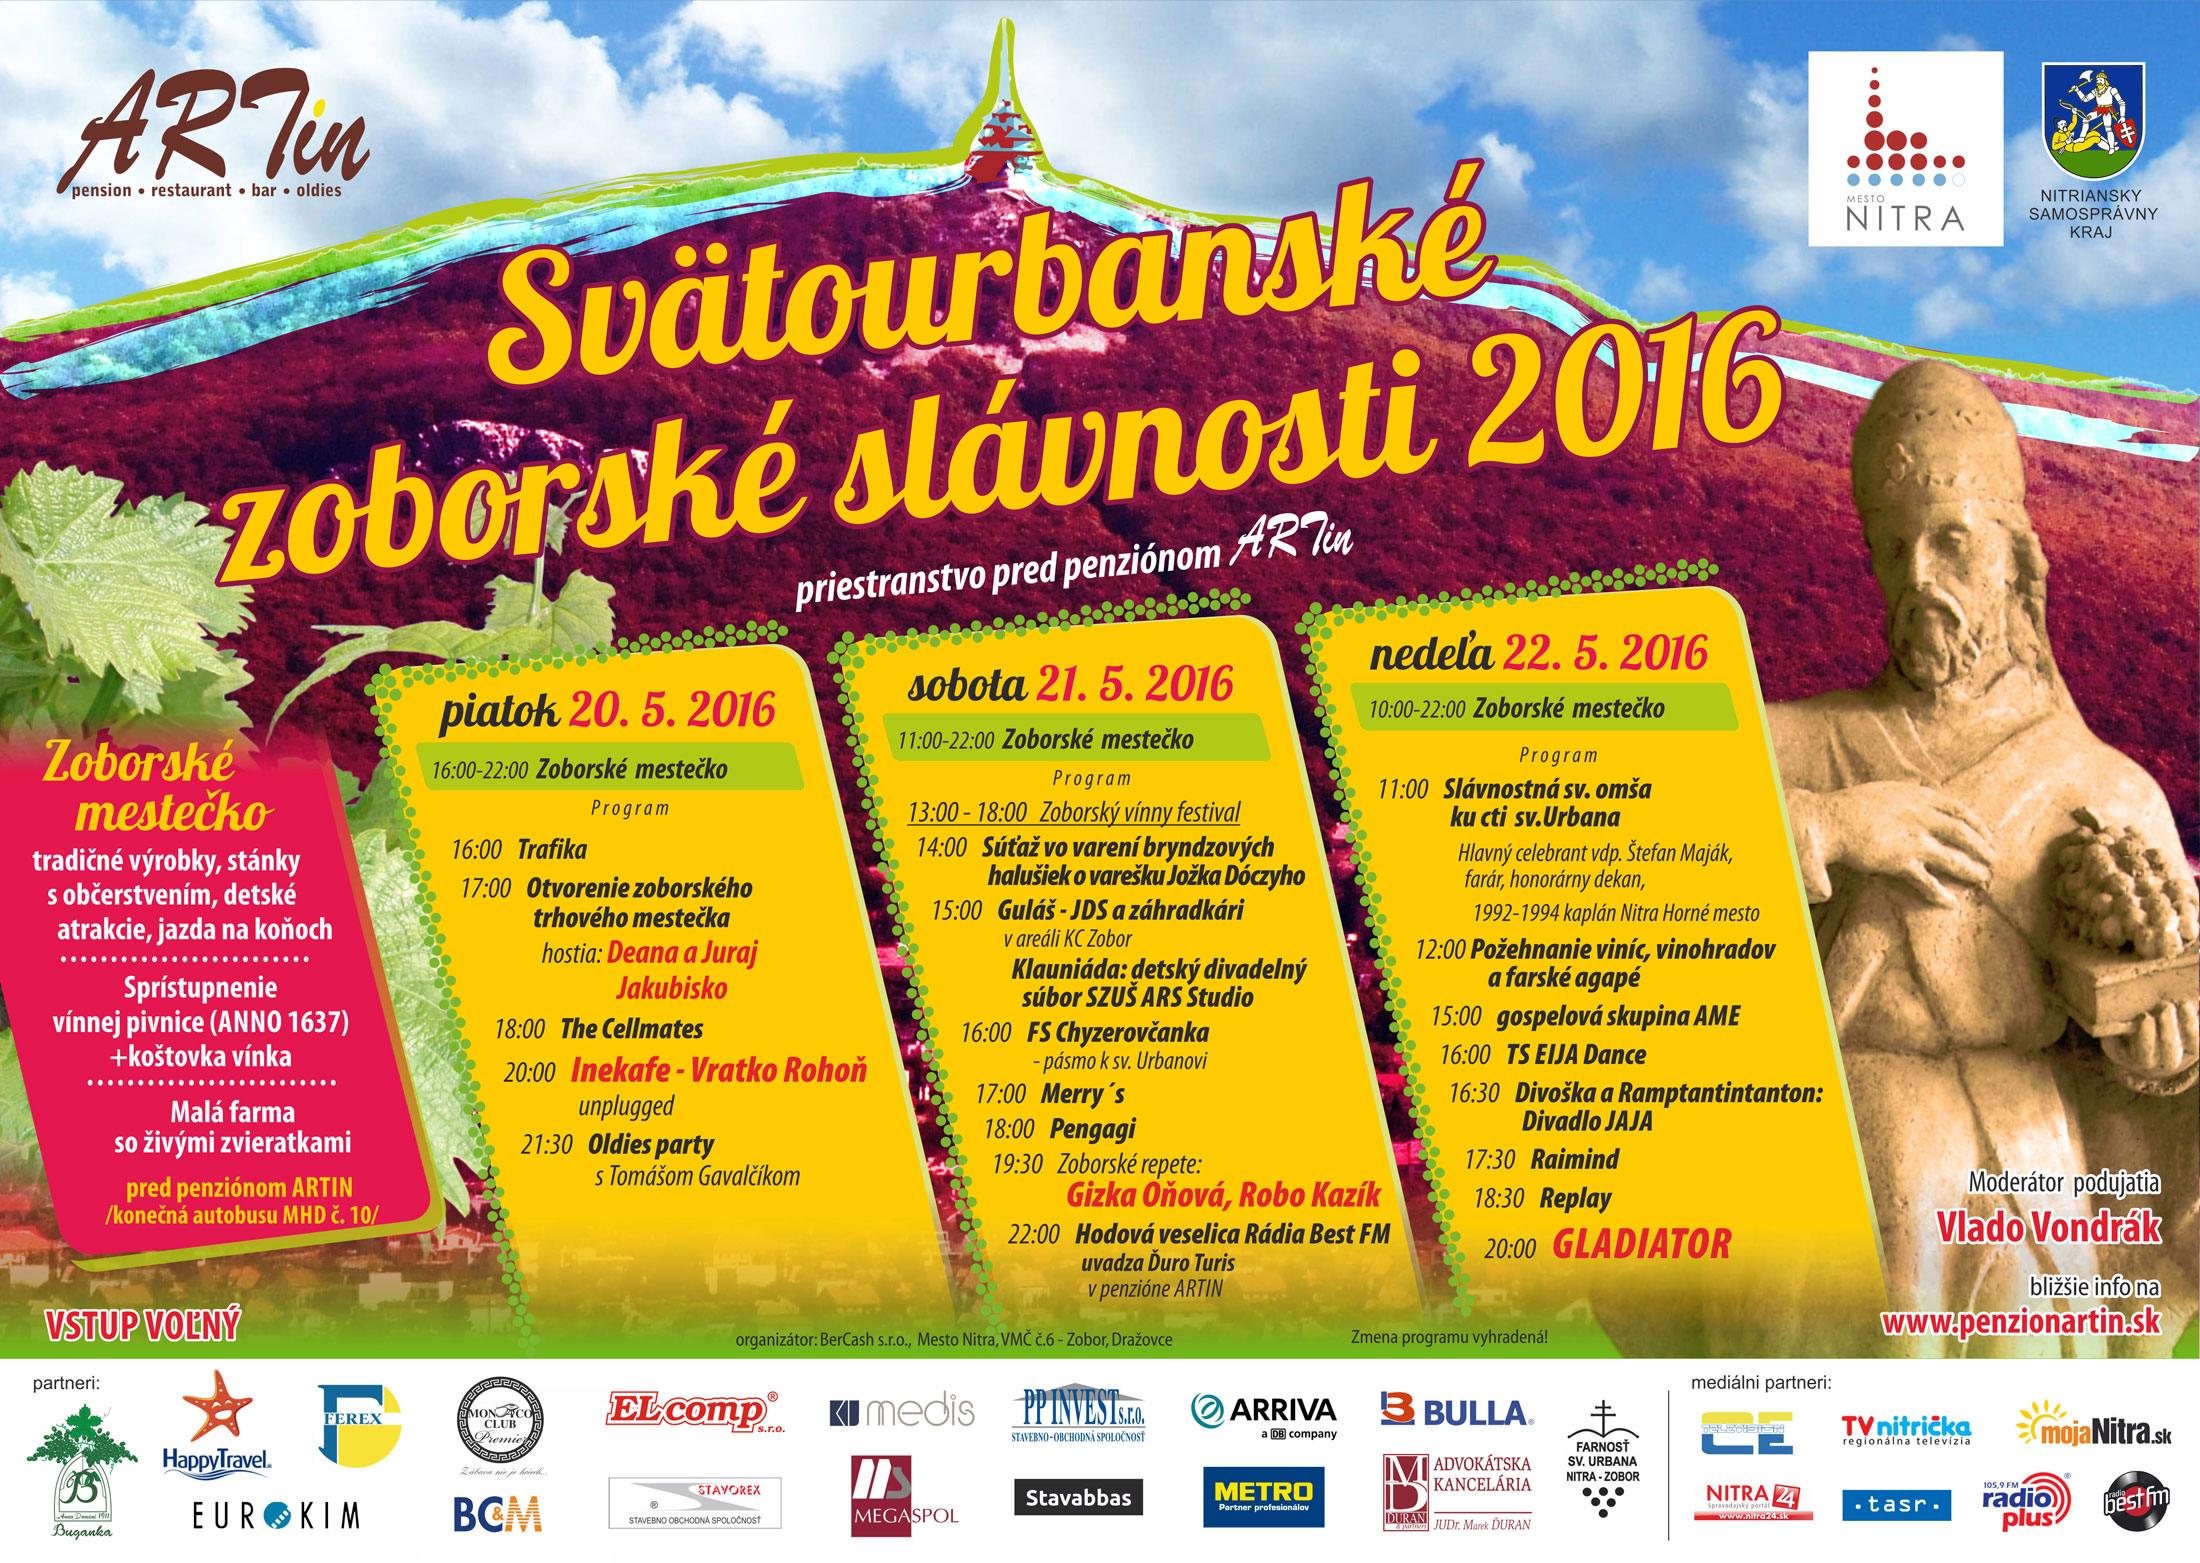 Svtourbansk zoborsk slvnosti Nitra 2016 - 6. ronk